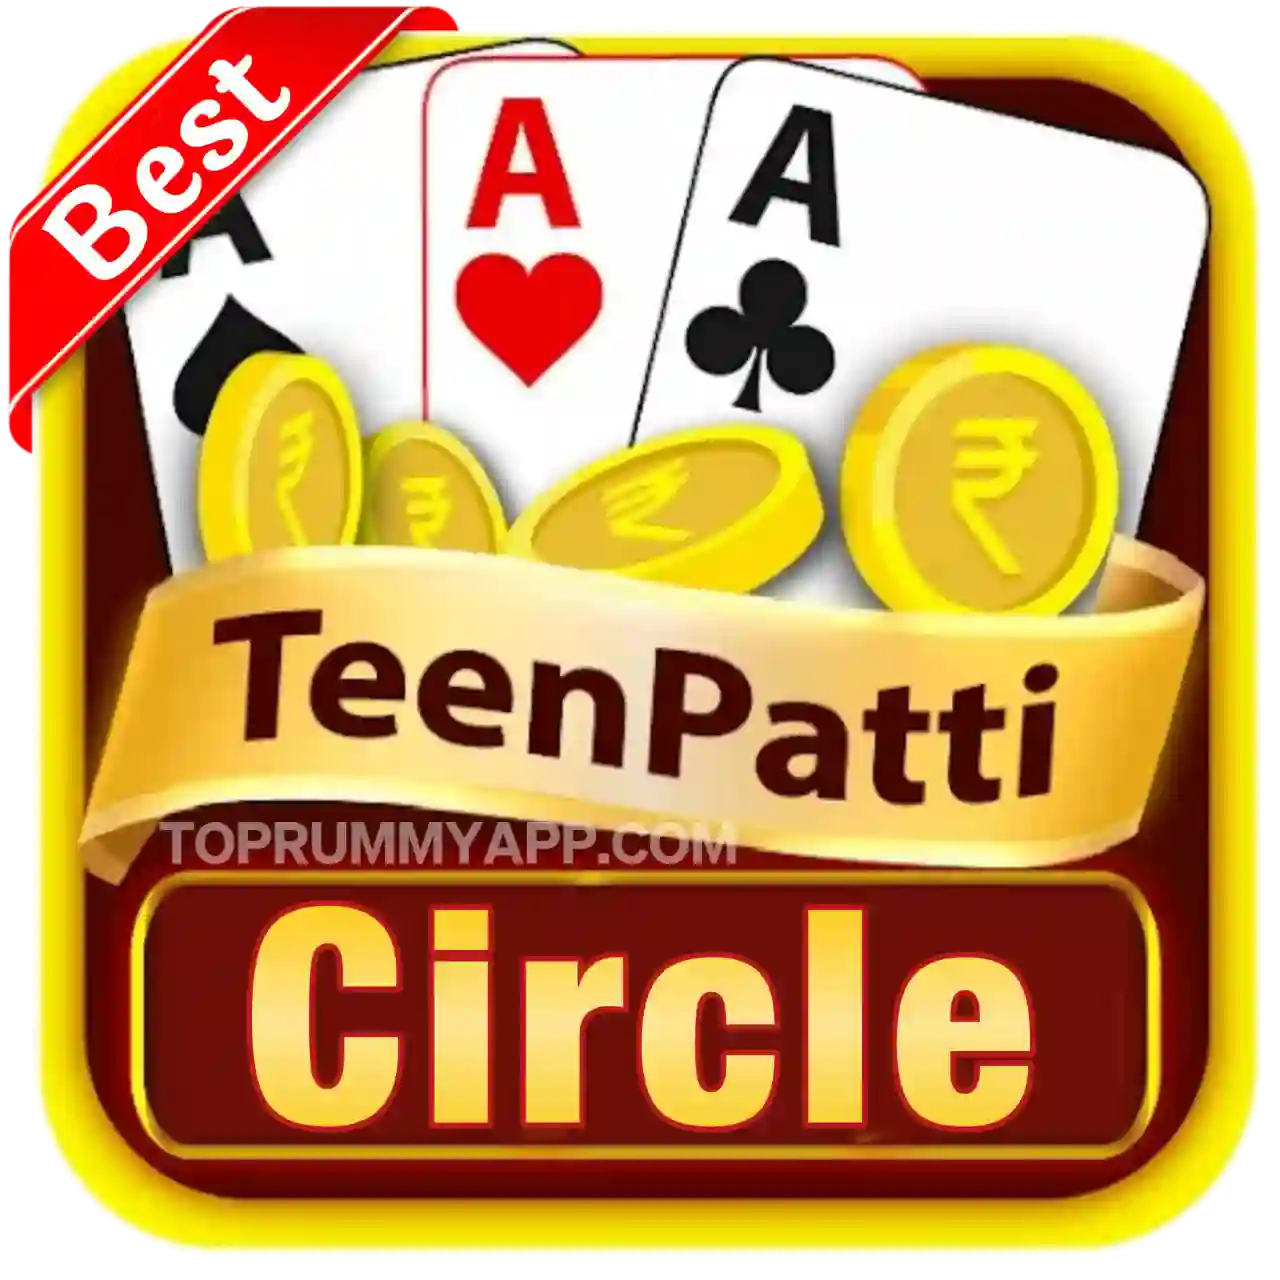 Teen Patti Circle App Download Top Teen Patti App List ₹51 Bonus